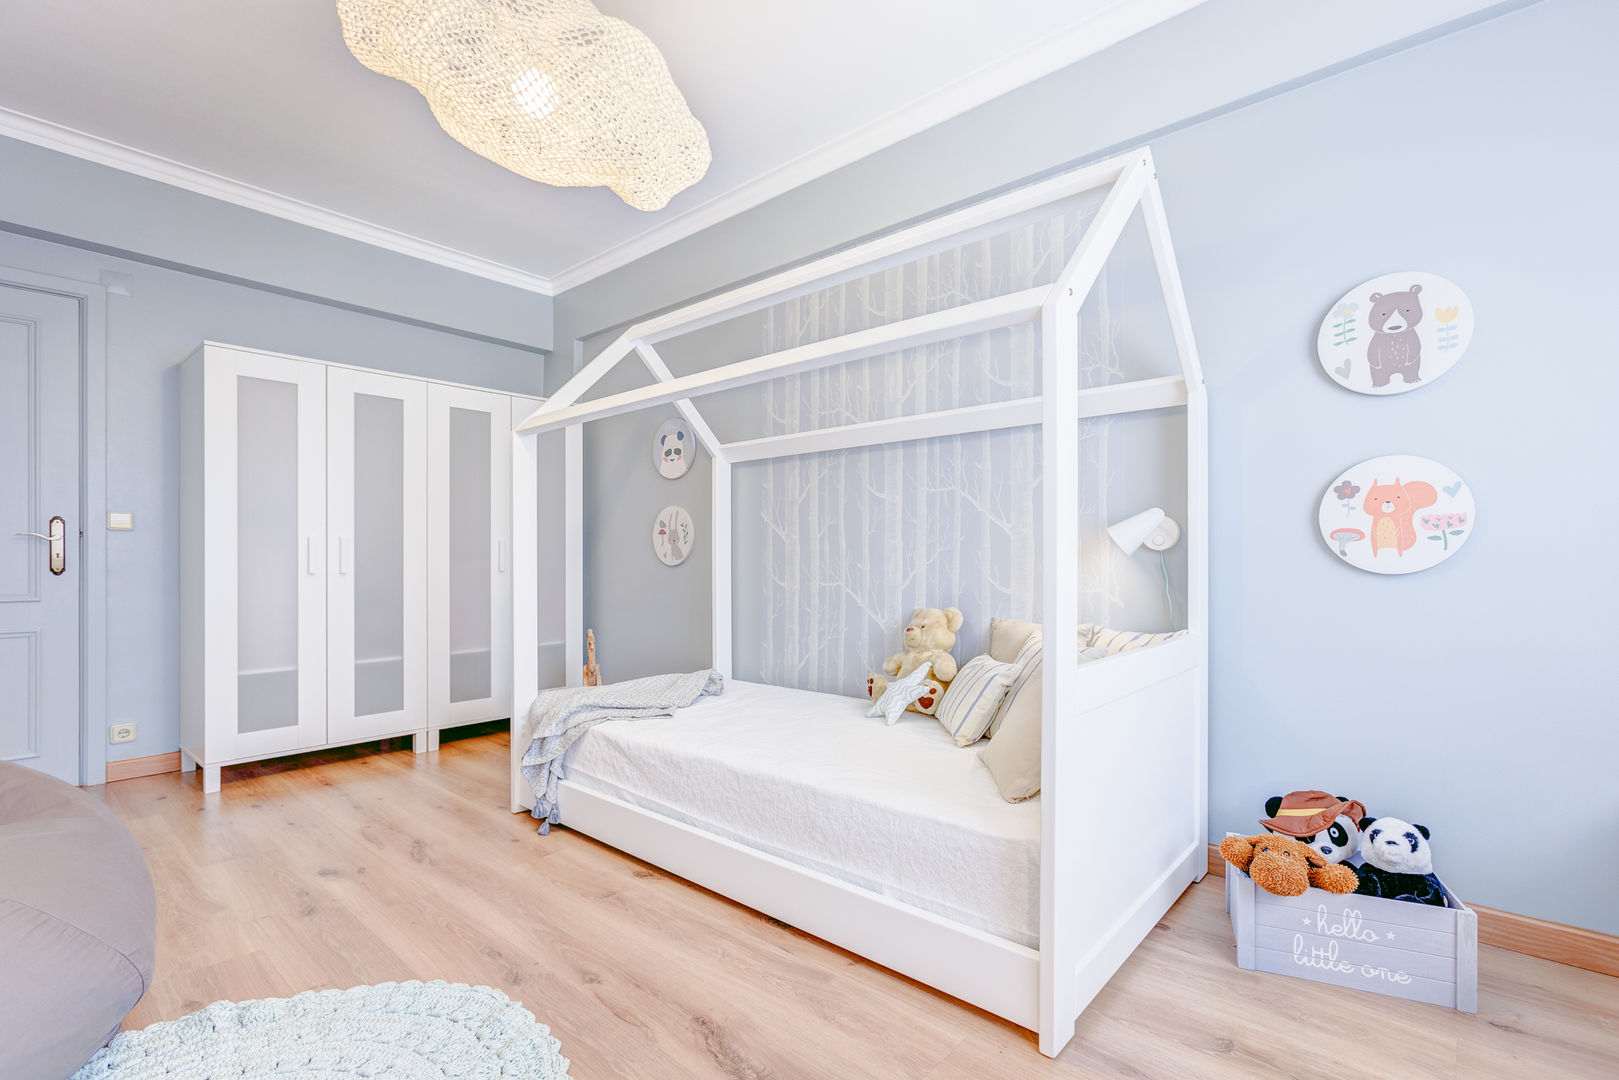 Querido Mudei a Casa – Ep 2615, Santiago | Interior Design Studio Santiago | Interior Design Studio Nursery/kid’s room